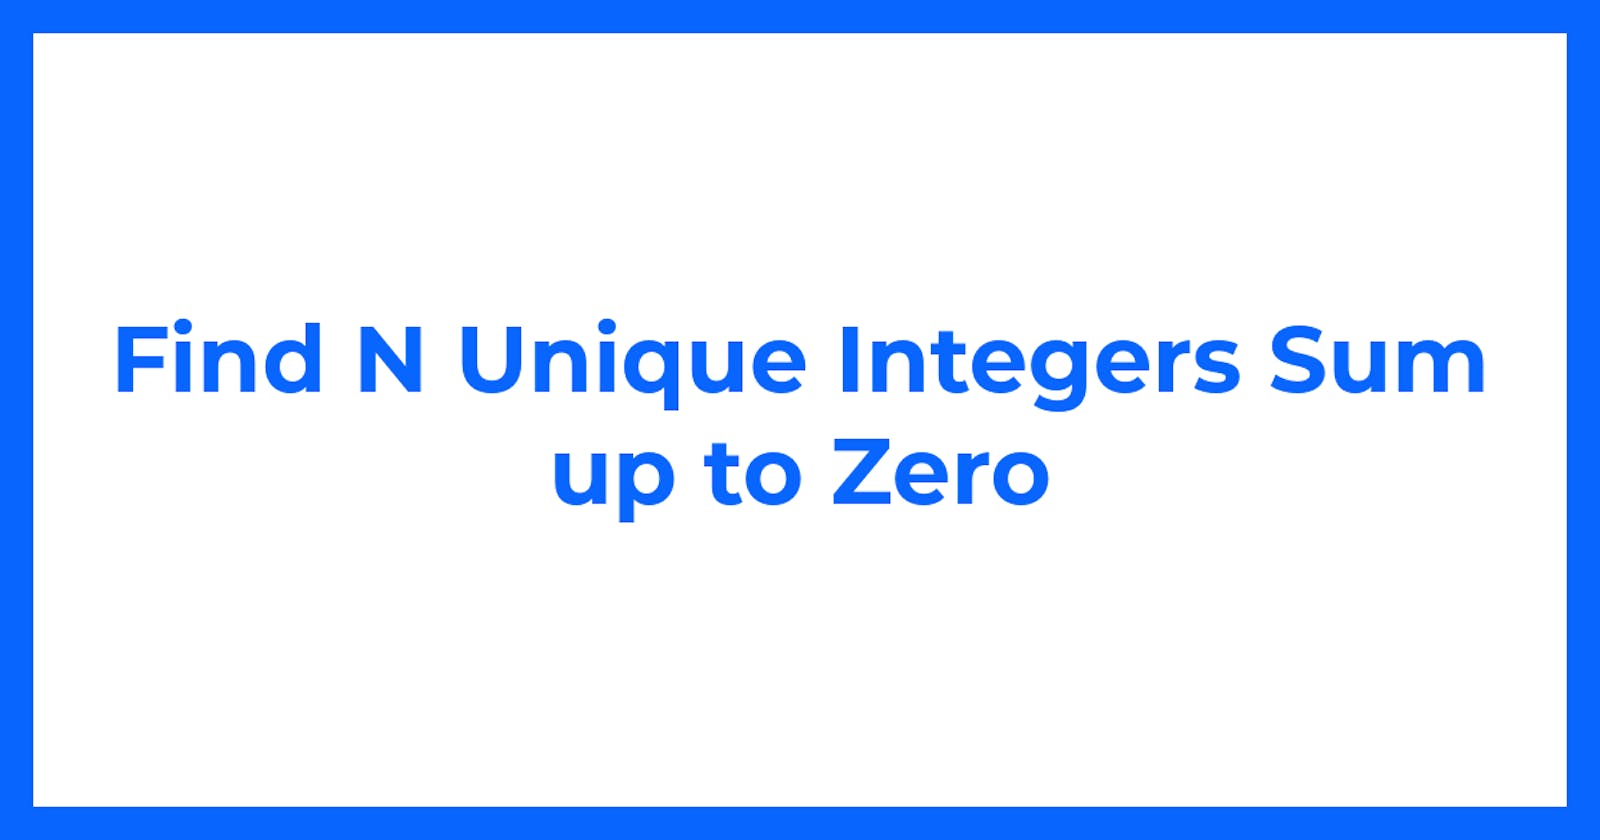 Find N Unique Integers Sum up to Zero